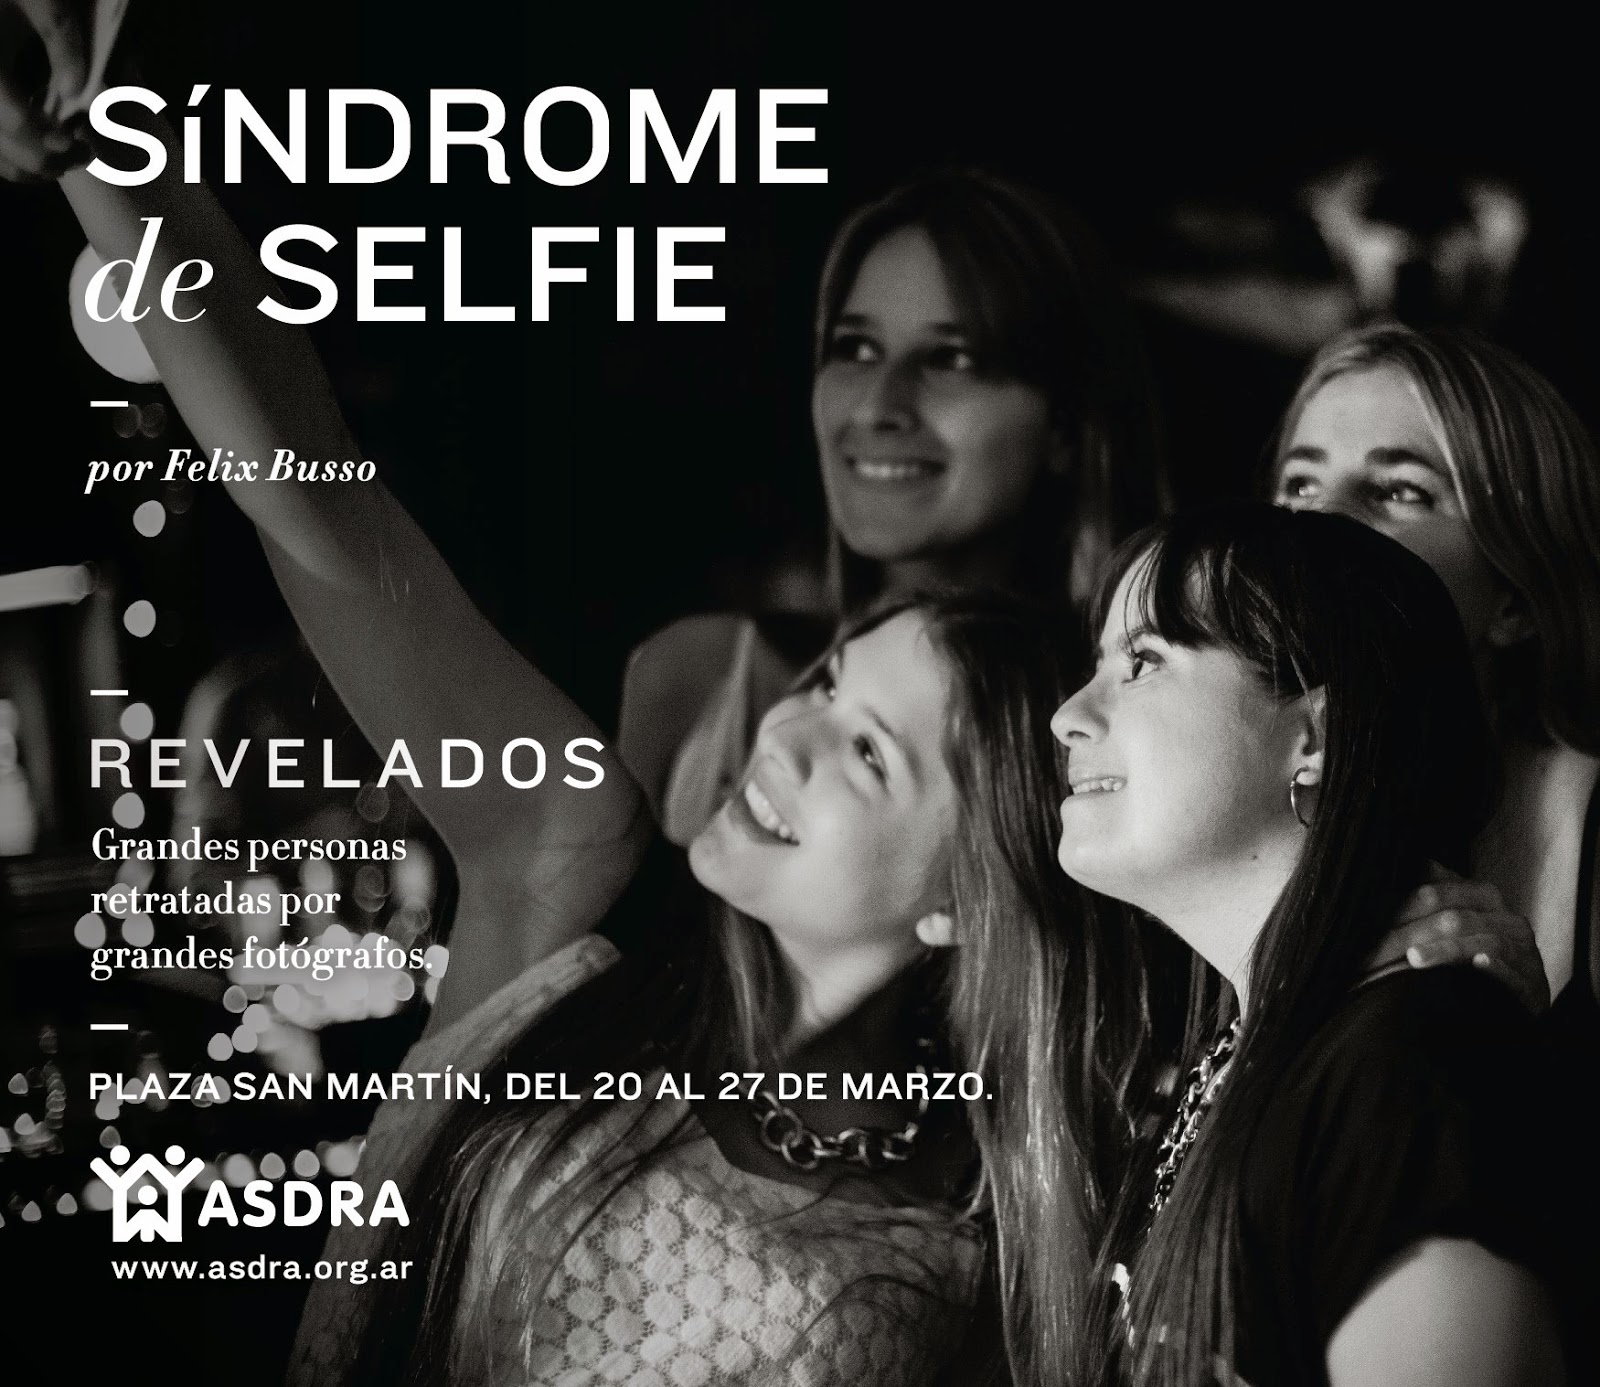 La imagen es de un grupo de cuatro chicas tomandose una foto estilo "selfie" una de ellas tiene Síndrome de Down. En sobre impreso el título de la foto y datos de la campaña.